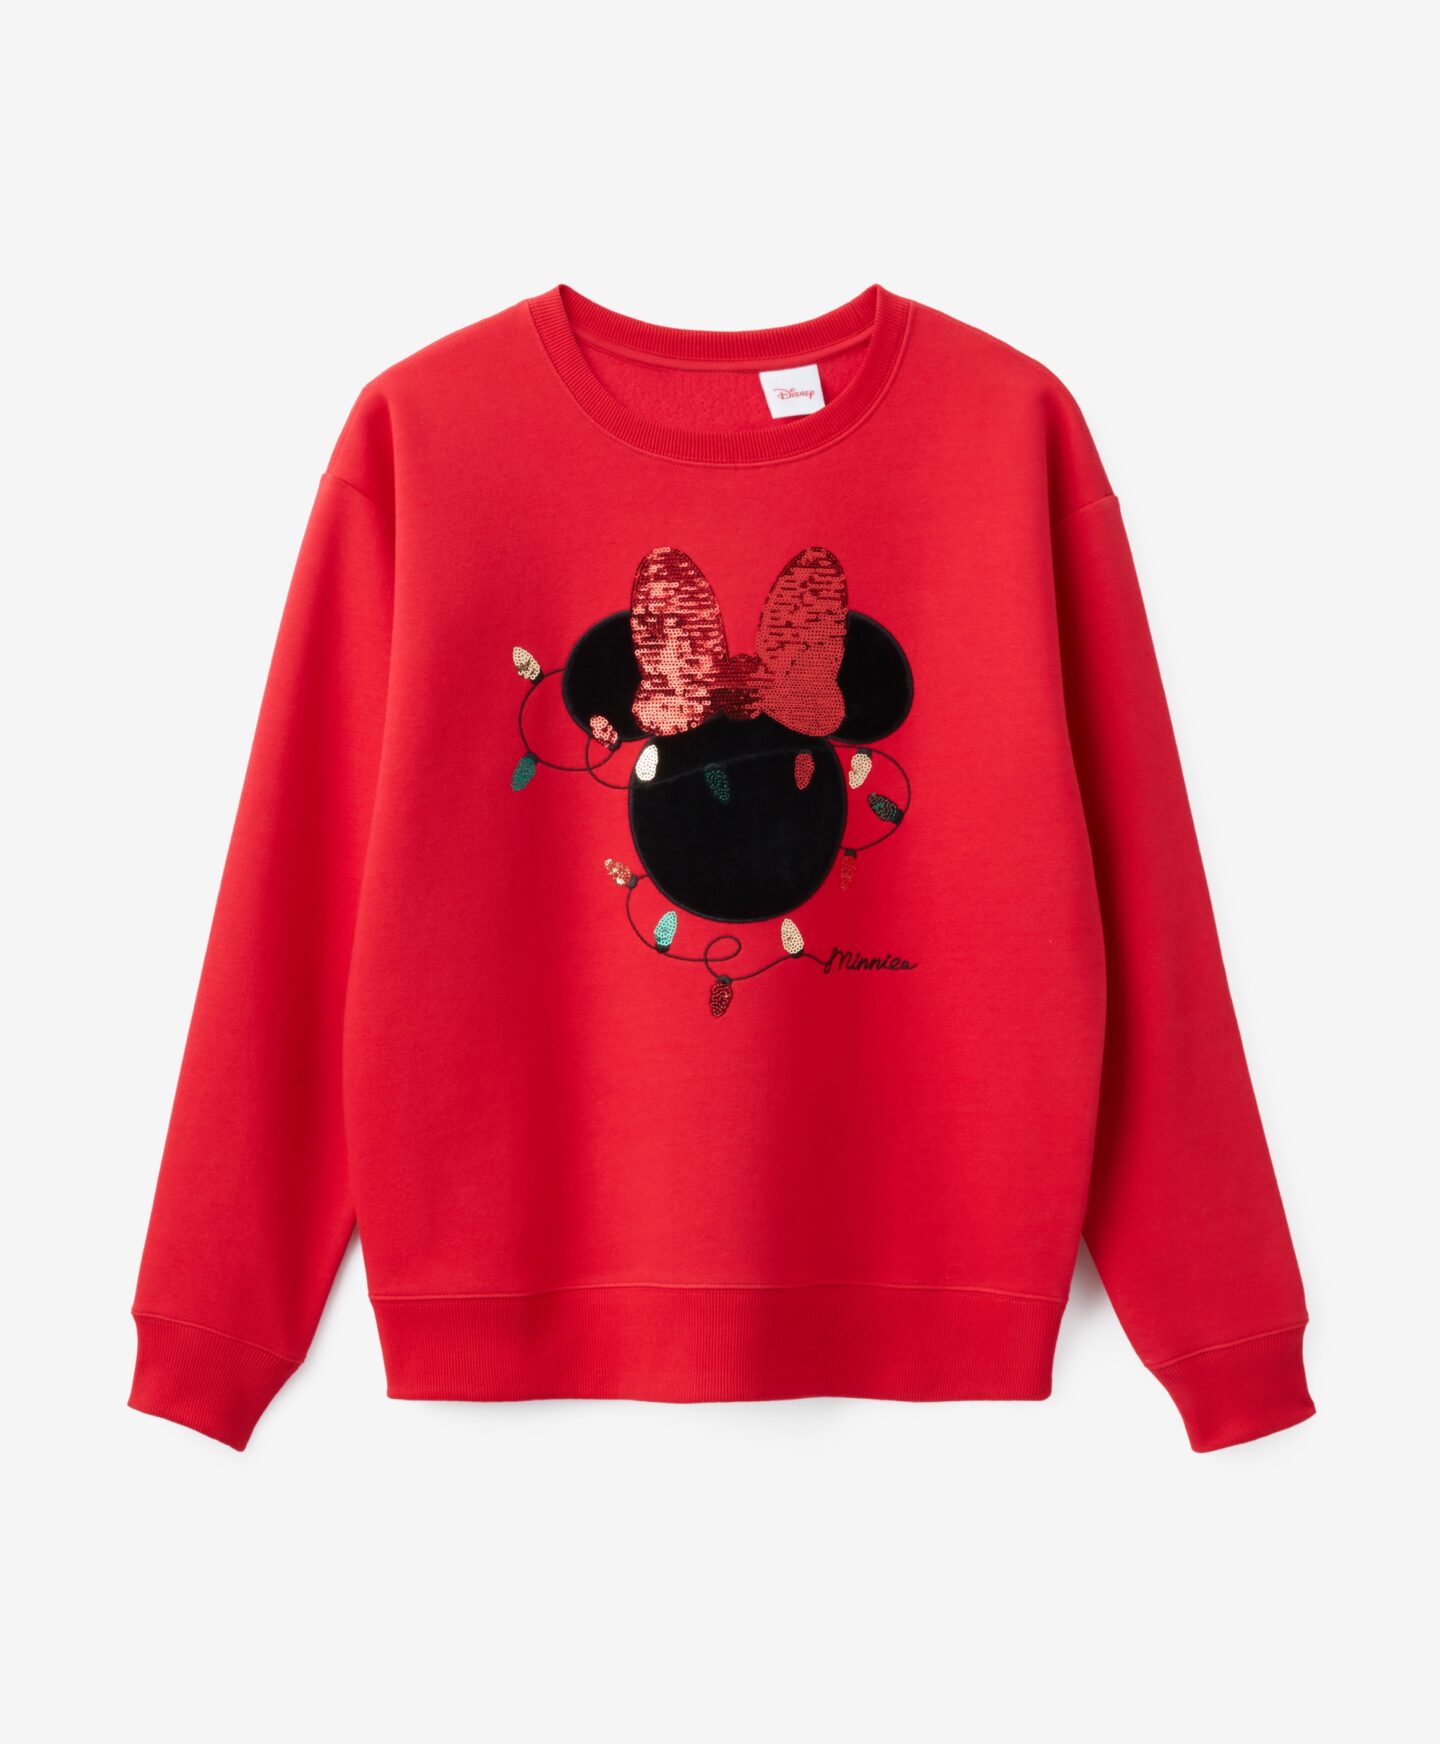 Γυναικείο φούτερ με άδεια χρήσης Disney Mickey με χριστουγεννιάτικο σχέδιο, χρώμα κόκκινο, S-XXL